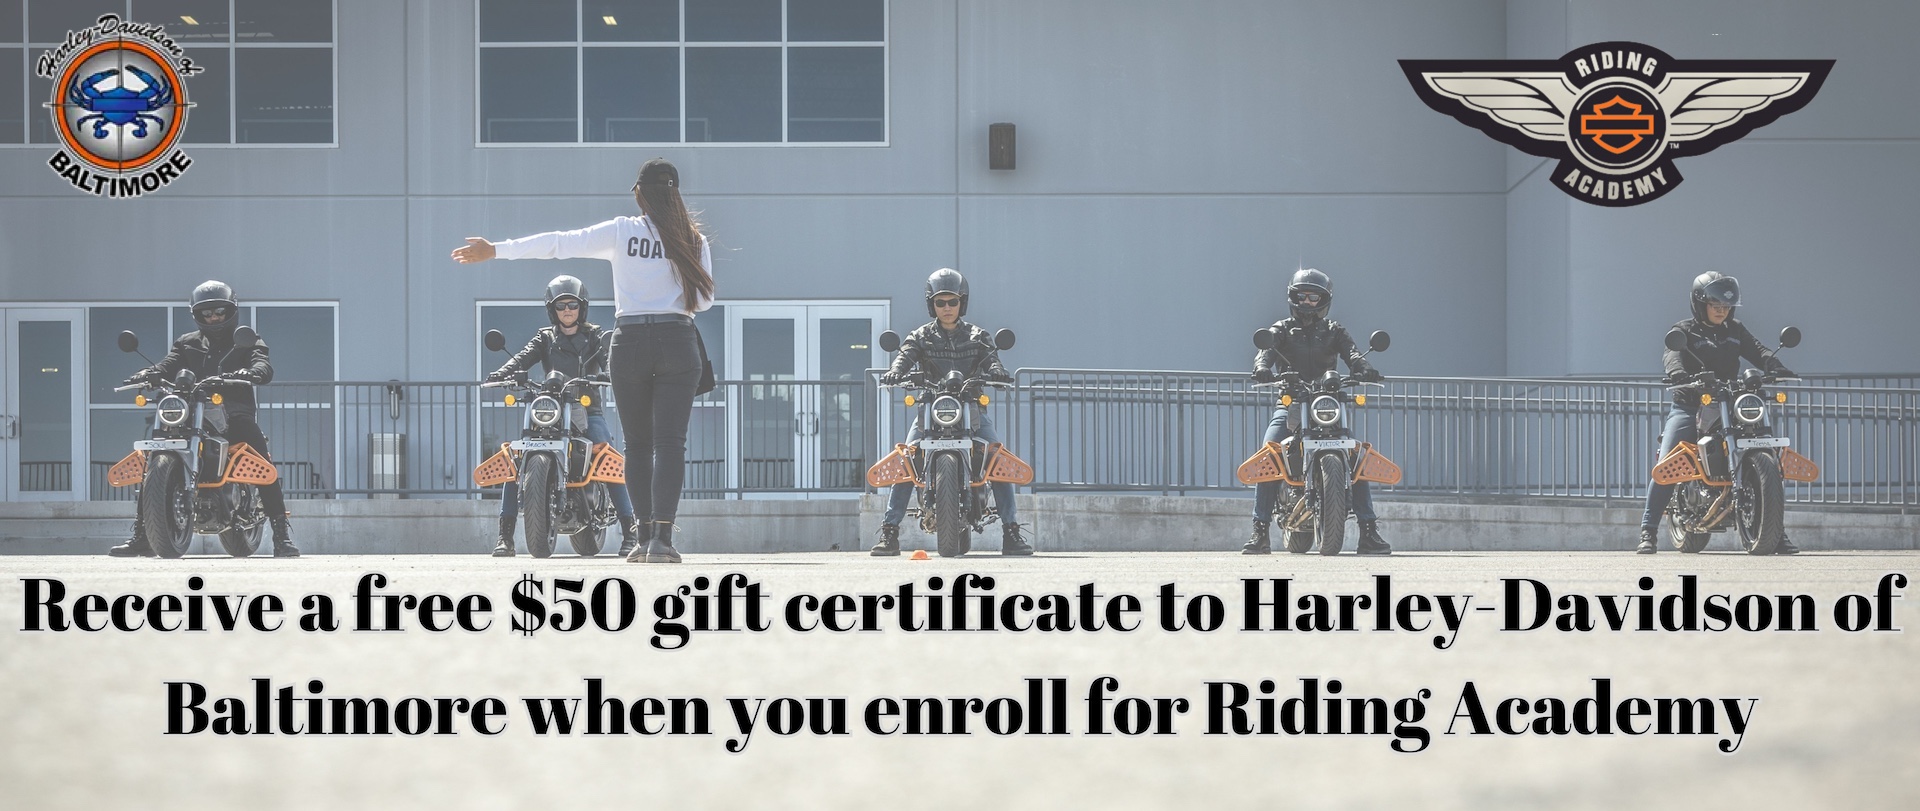 Gift Cards  Harley-Davidson USA